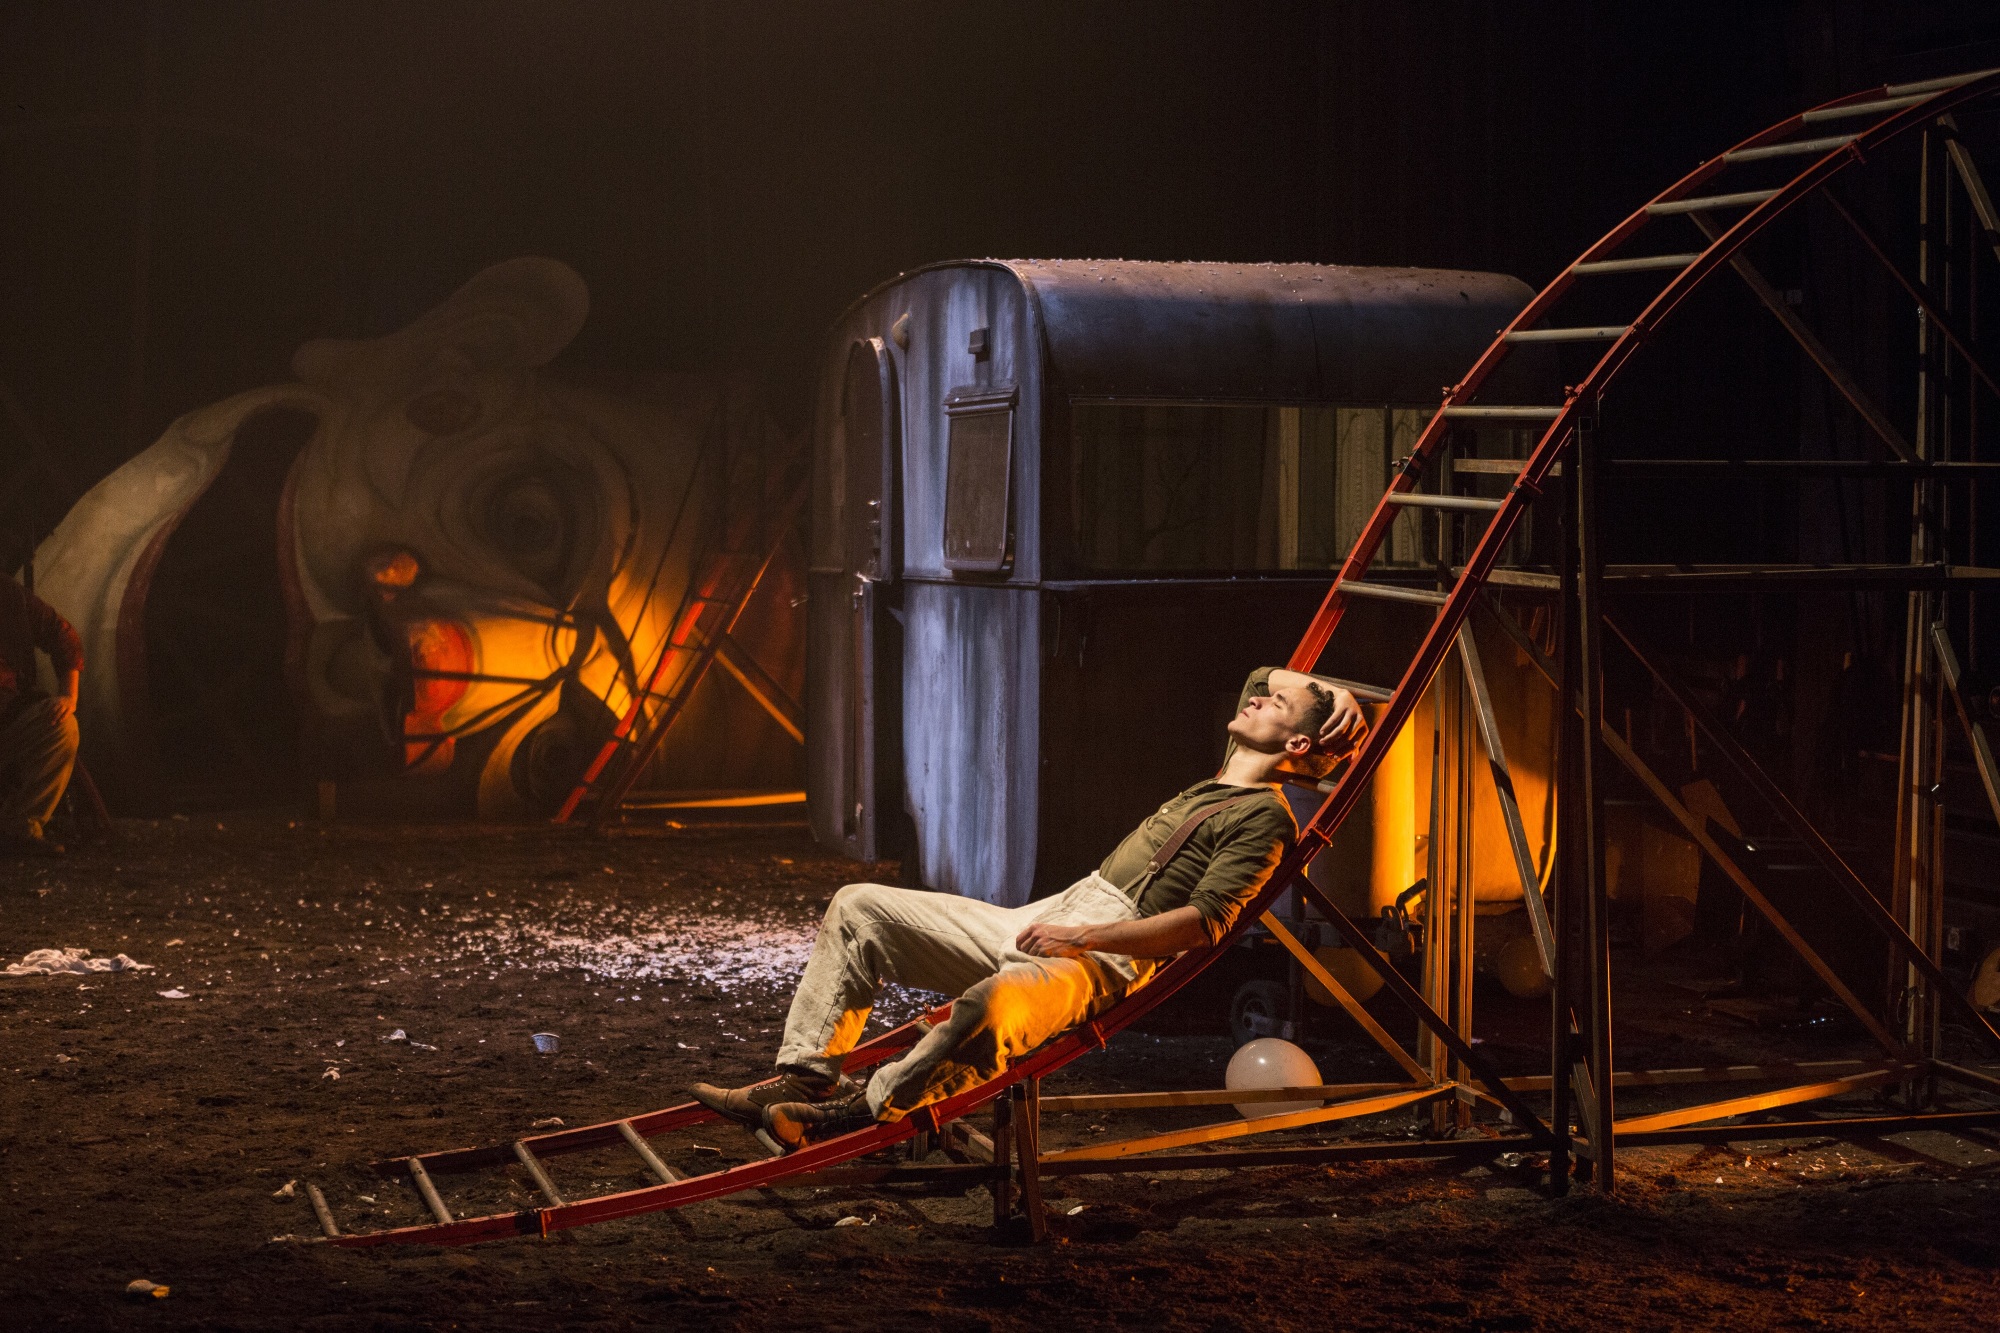 Сцена из спектакля Михаэля Тальхаймера "Пер Гюнт" © Фото с официального сайта Королевского драматического театра